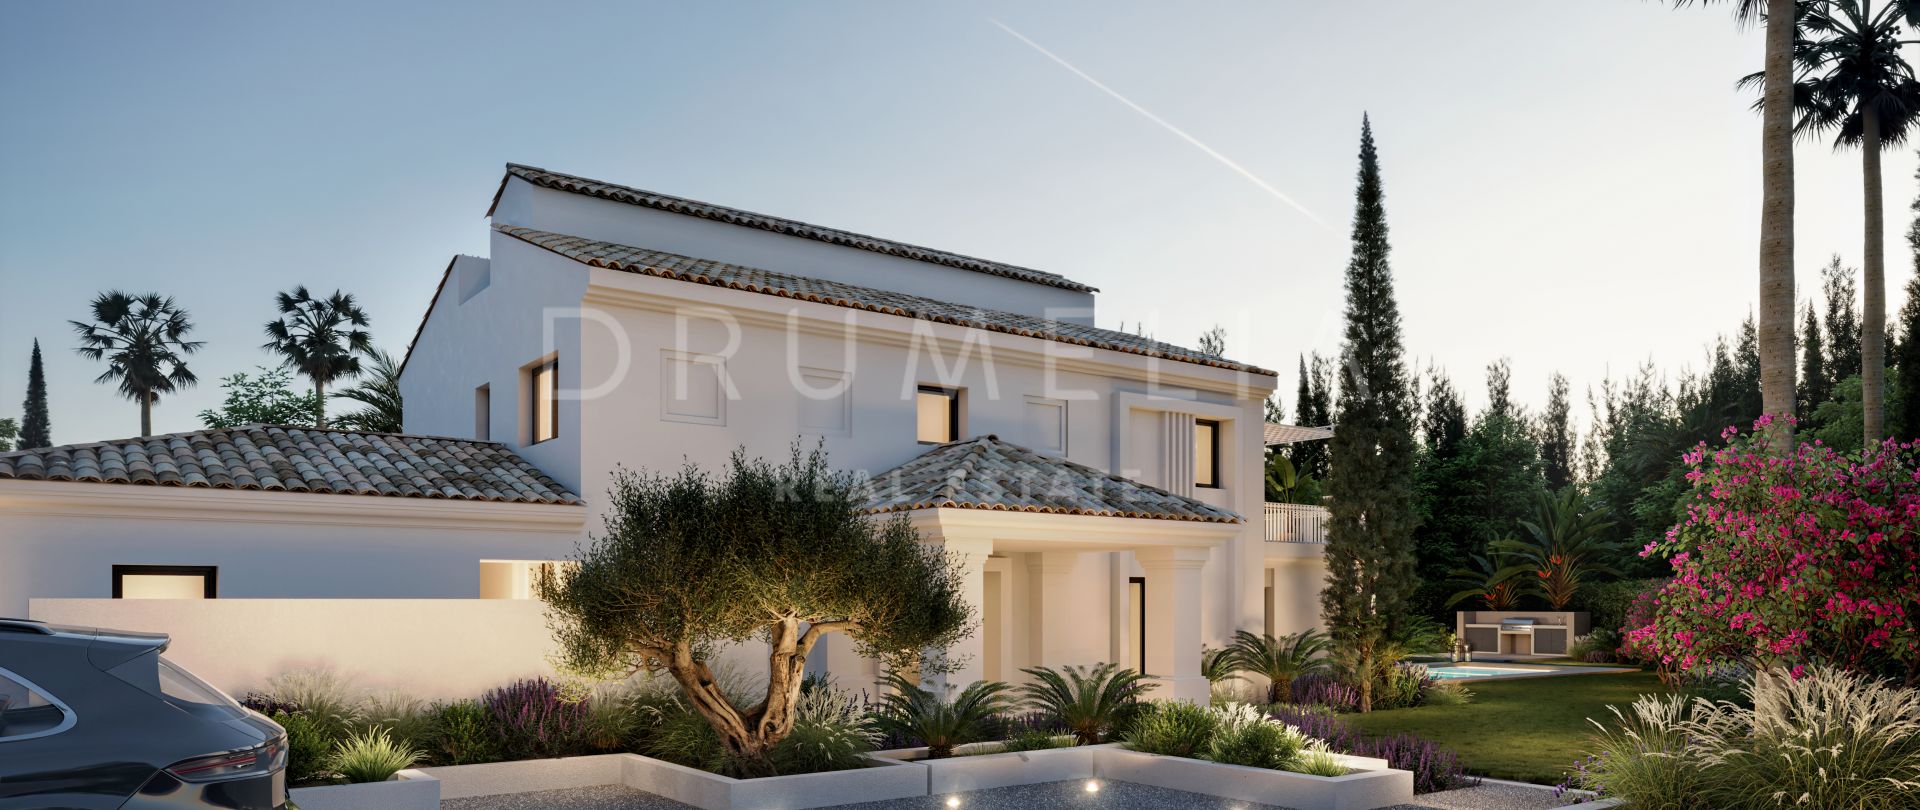 Nyrenoverat modernt hus för lyxig medelhavslivsstil i Nueva Andalucia